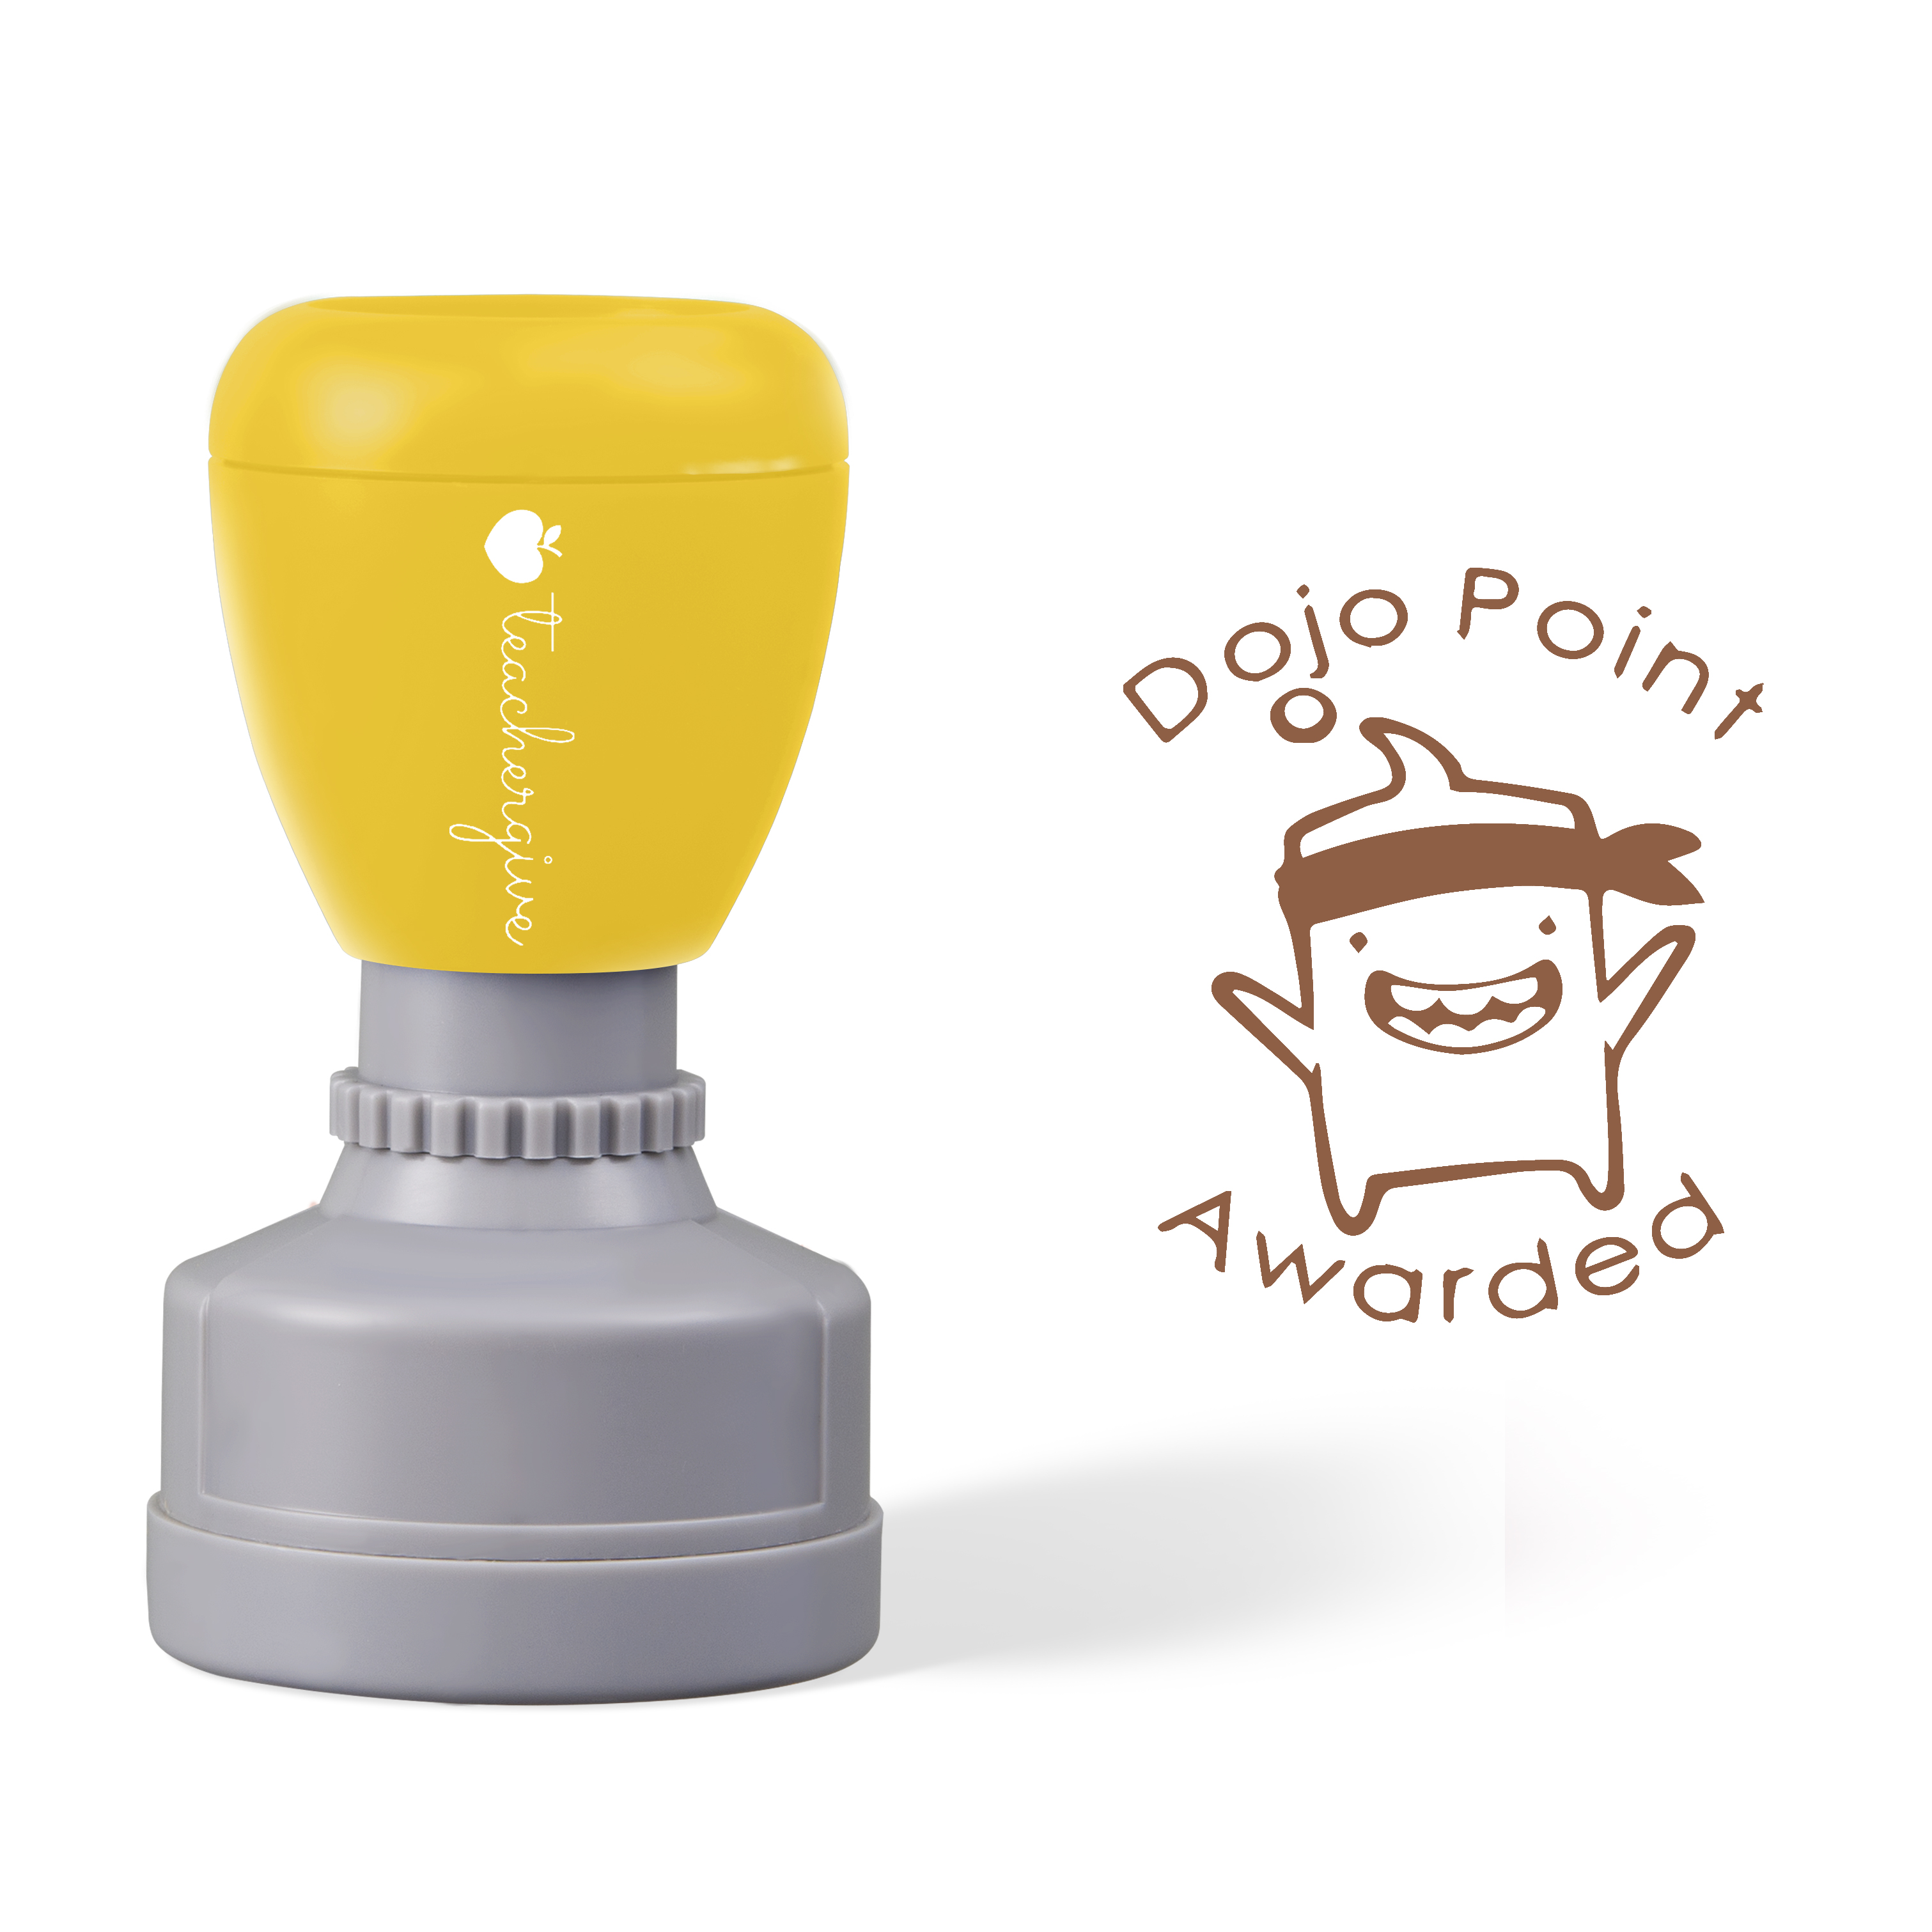 Dojo Point Awarded Good Stamp